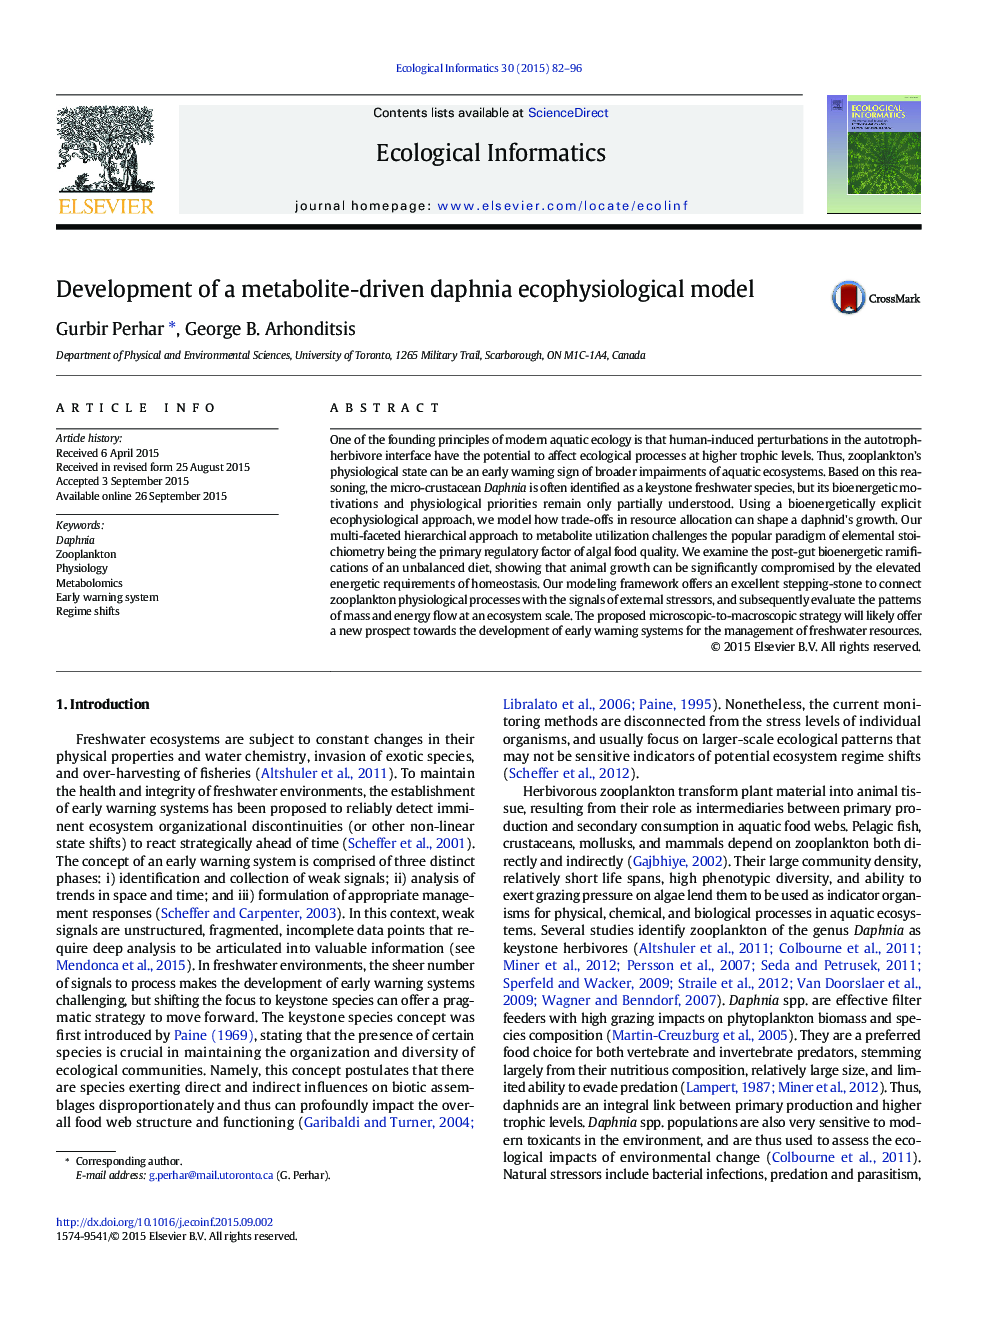 توسعه یک مدل اکوفیزیولوژی متشکله متابولیتی مبتنی بر دافنیا 